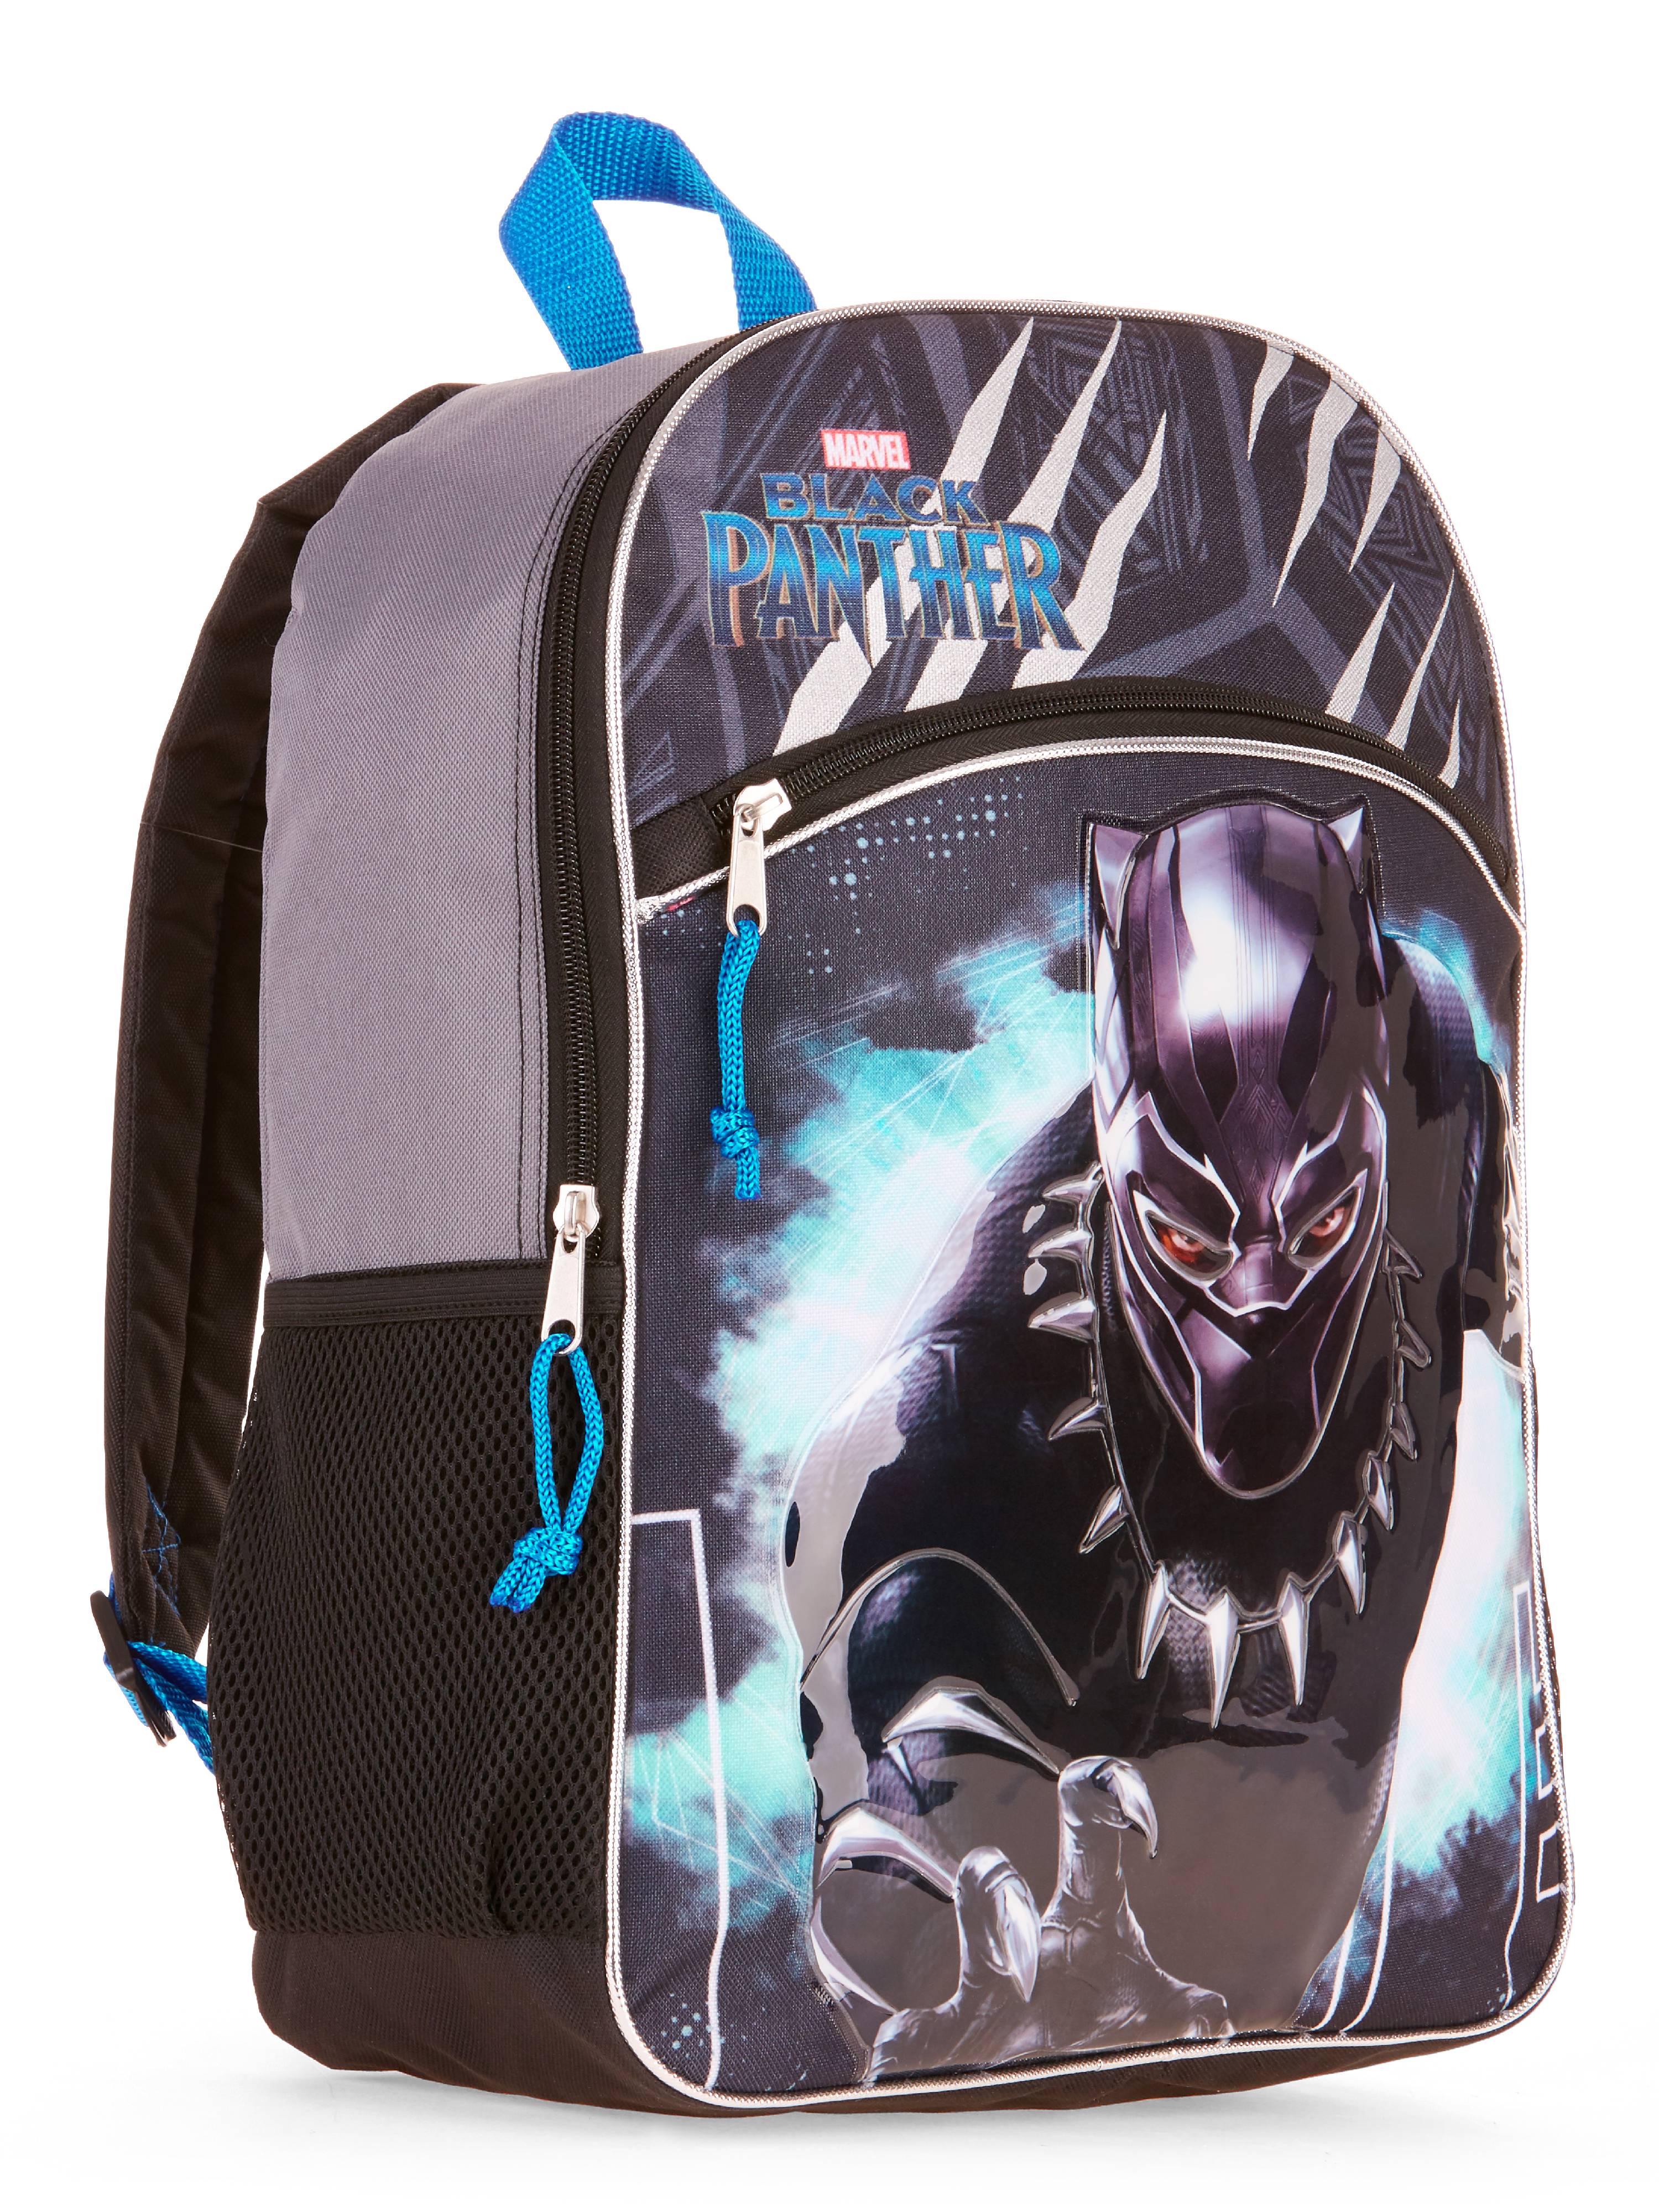 Marvel Black Panther Backpack - image 1 of 4